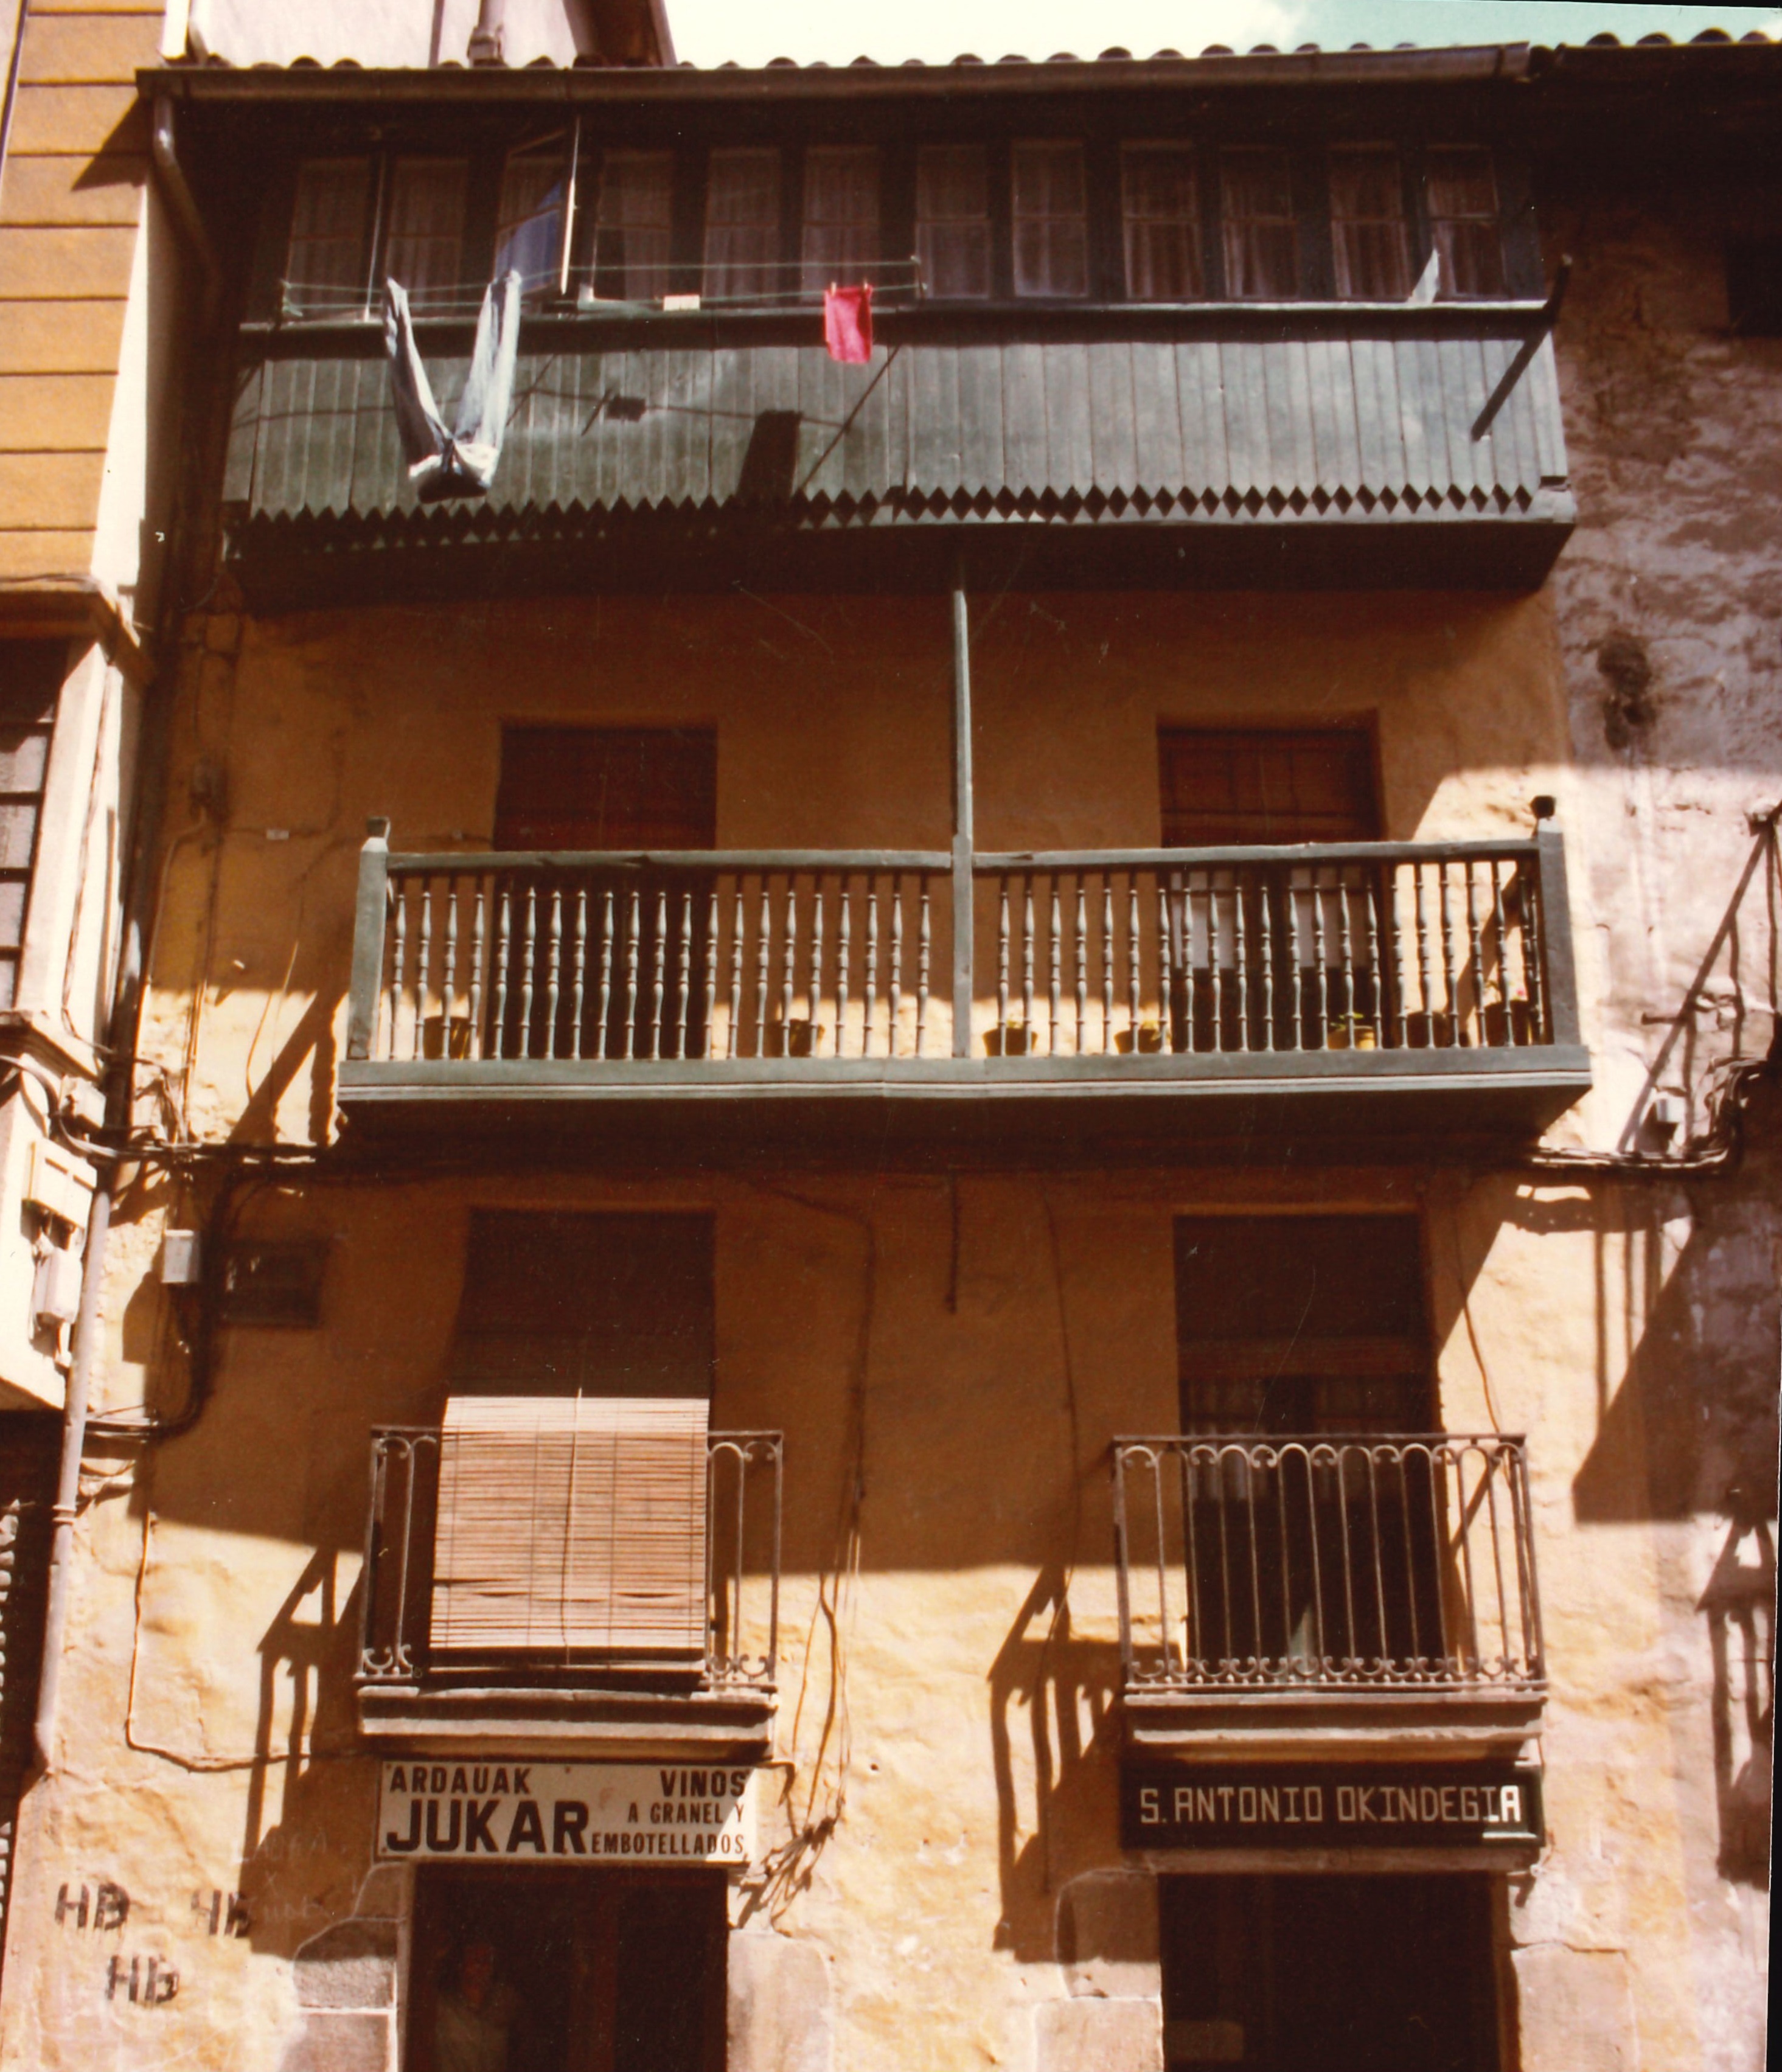 Edificio en la calle Marqués de Valdespina (antigua calle Barrenkale). Baldespina Markesa kalean eraikinak (antzinako Barrenkale kalean).